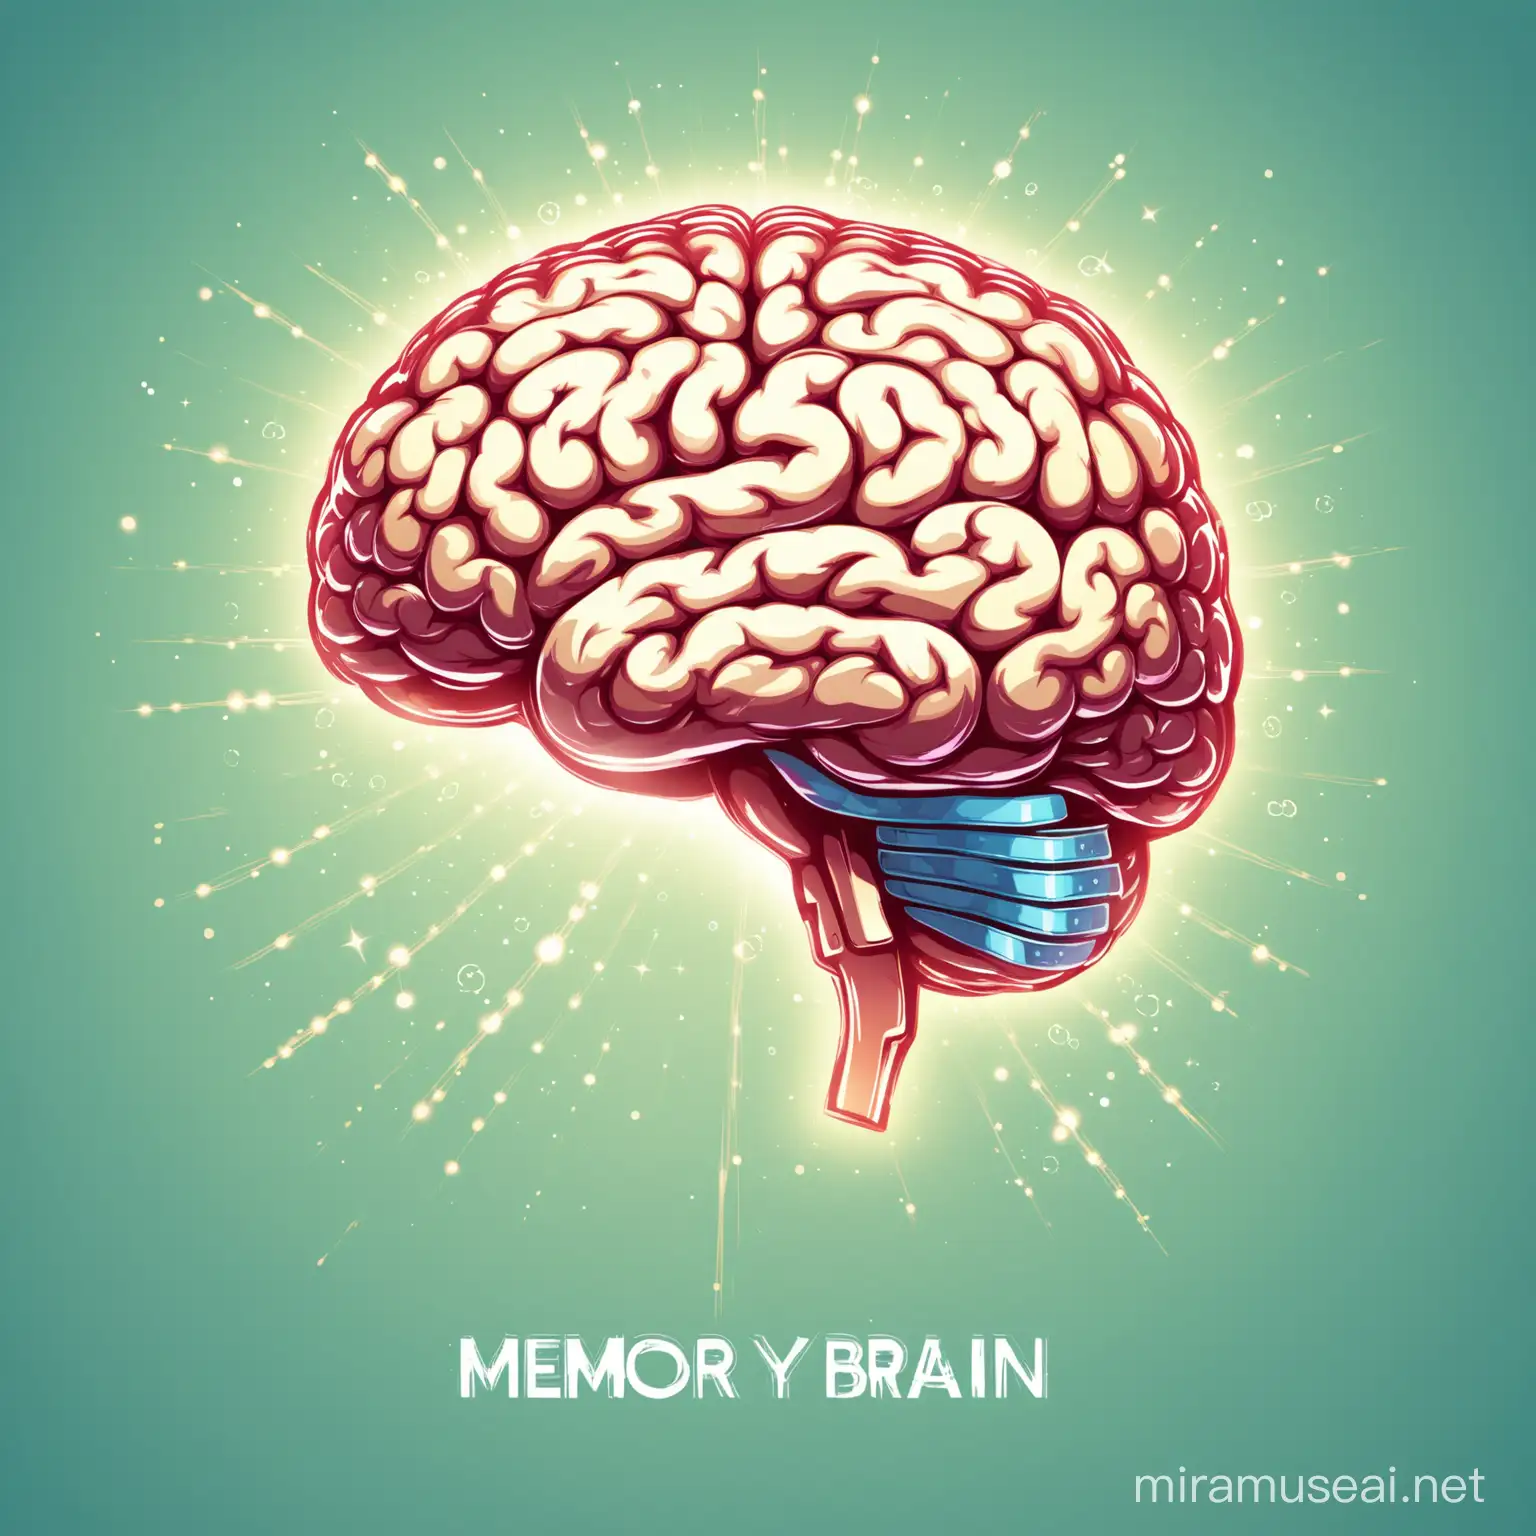 Memory brain